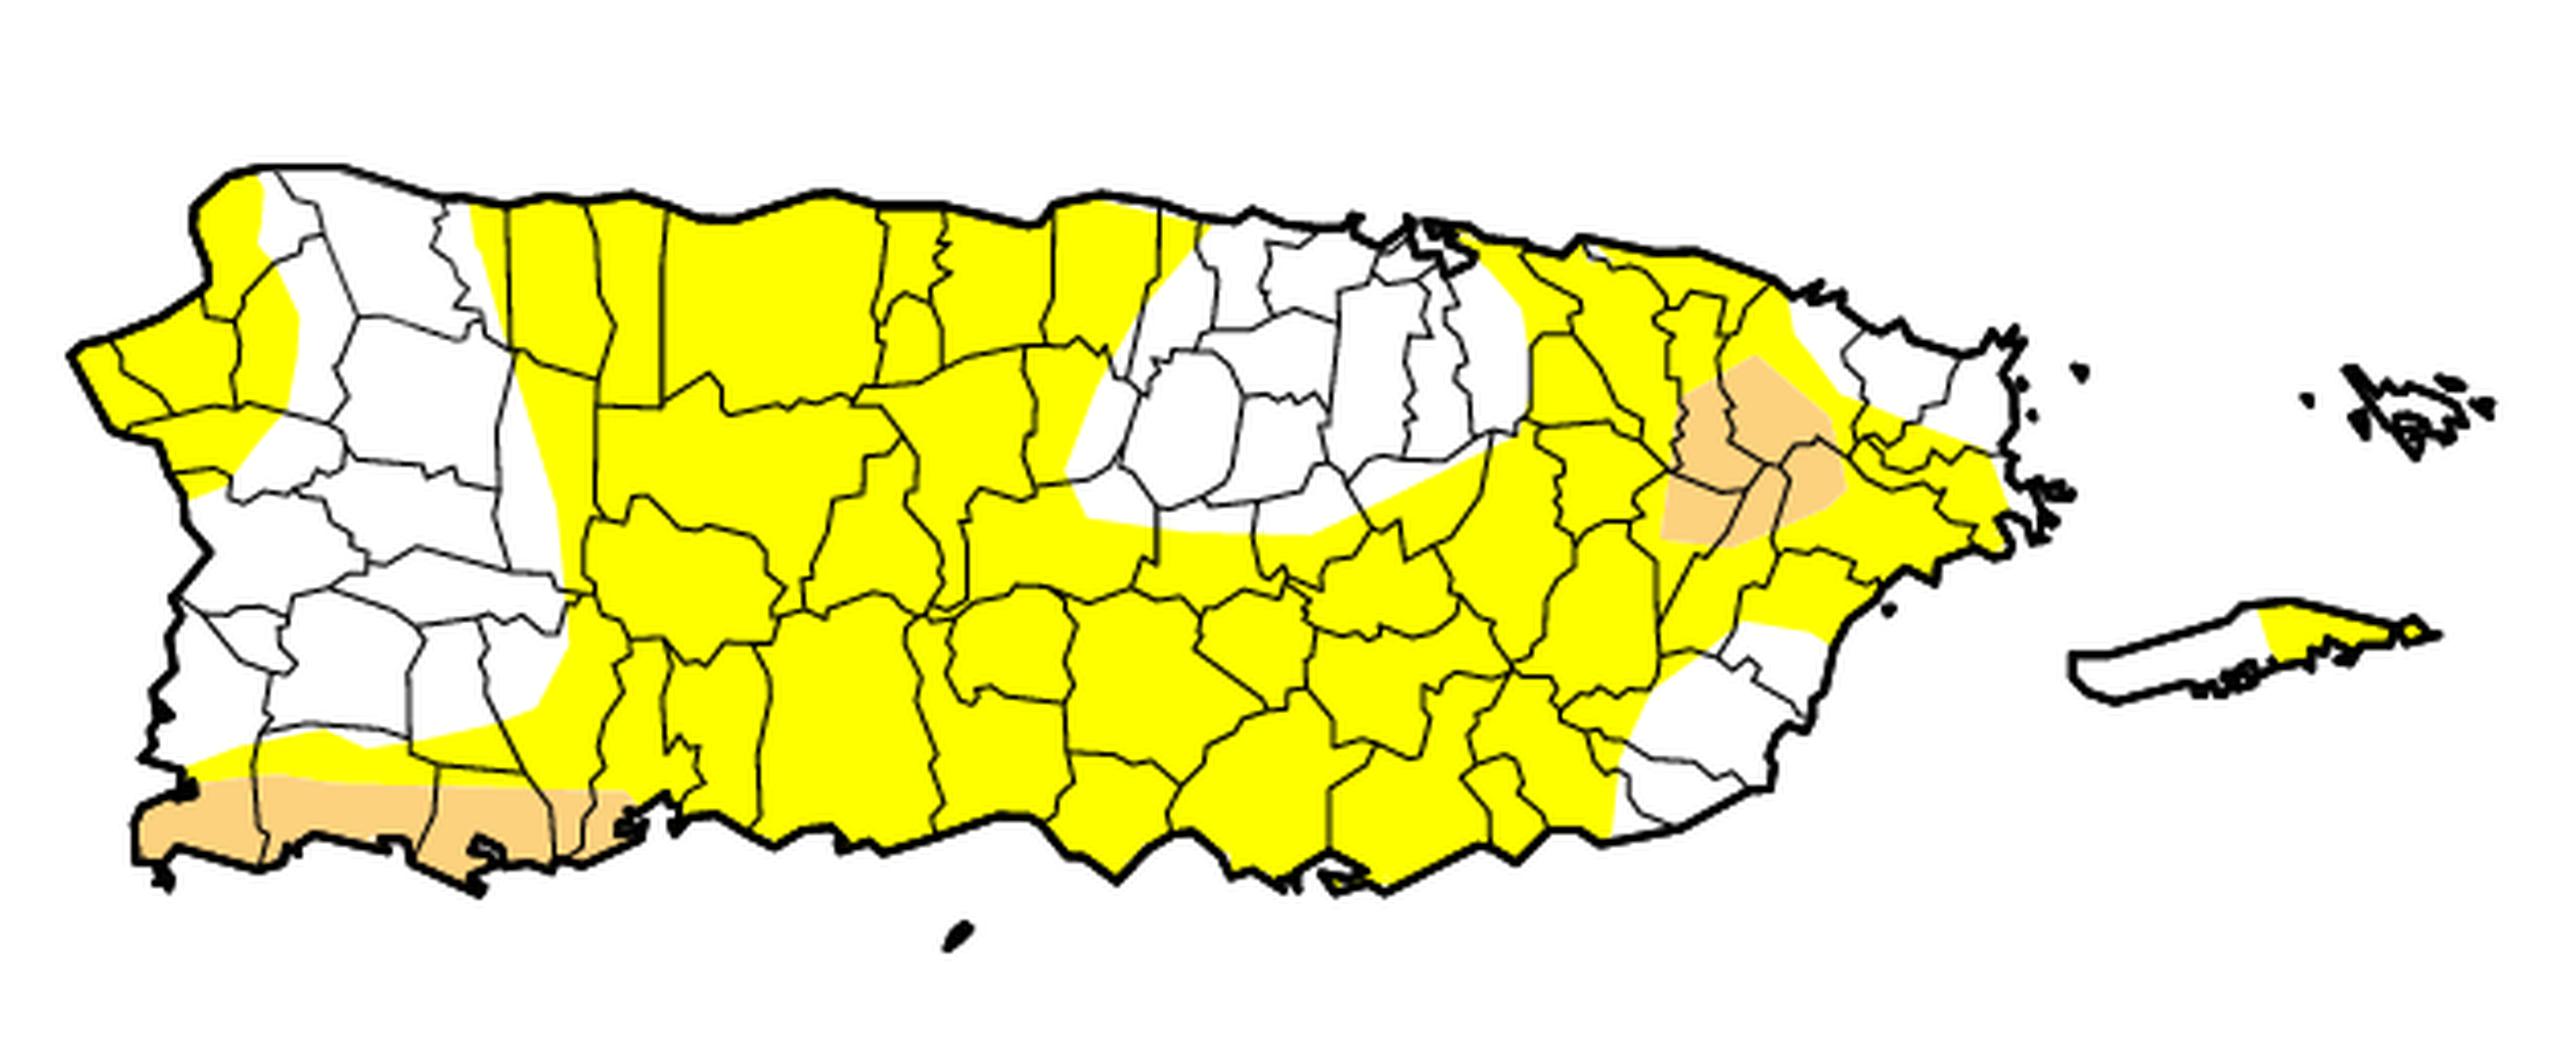 El mapa preparado por el Monitor de Sequía federal muestra que en las zonas amarillas se está bajo sequía anómala, mientras que las cremas están bajo sequía moderada.